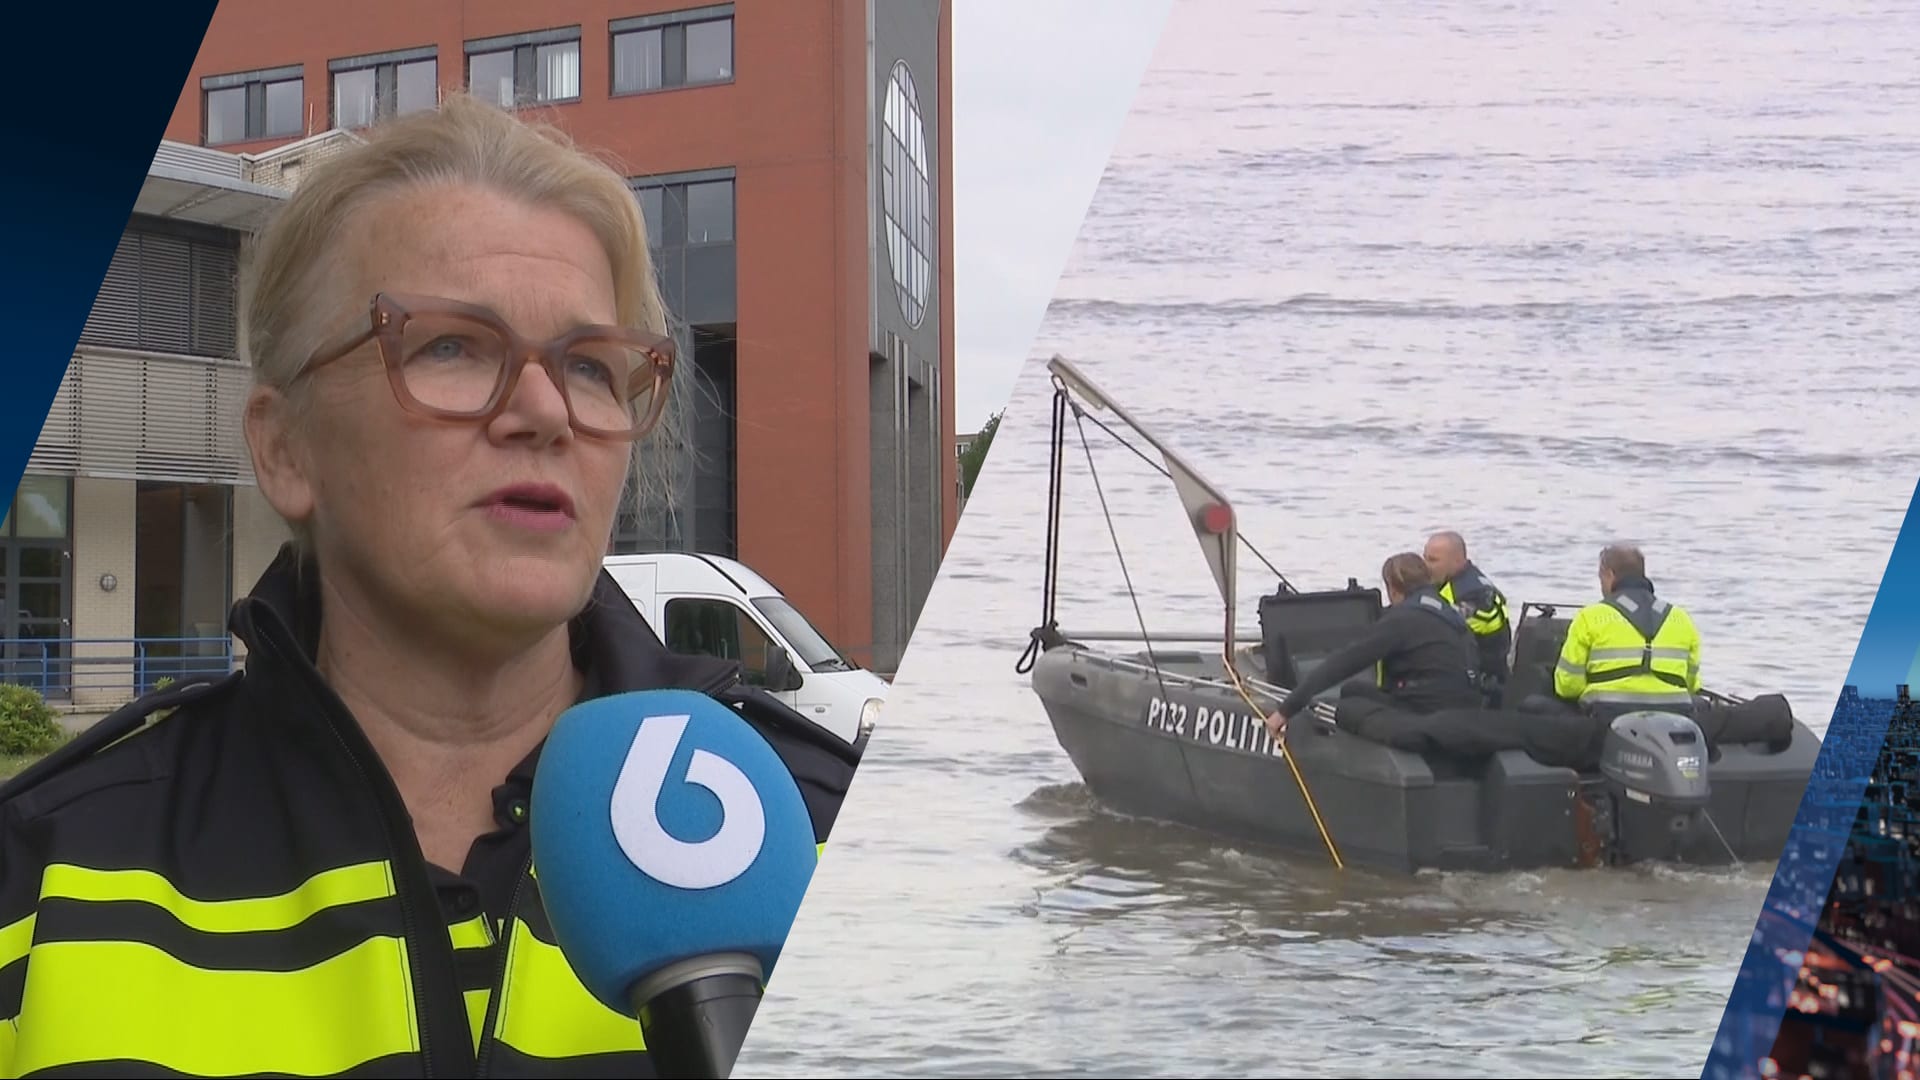 Zoekactie in Maas gaat verder: twee vermisten sprongen water in voor gevallen telefoon